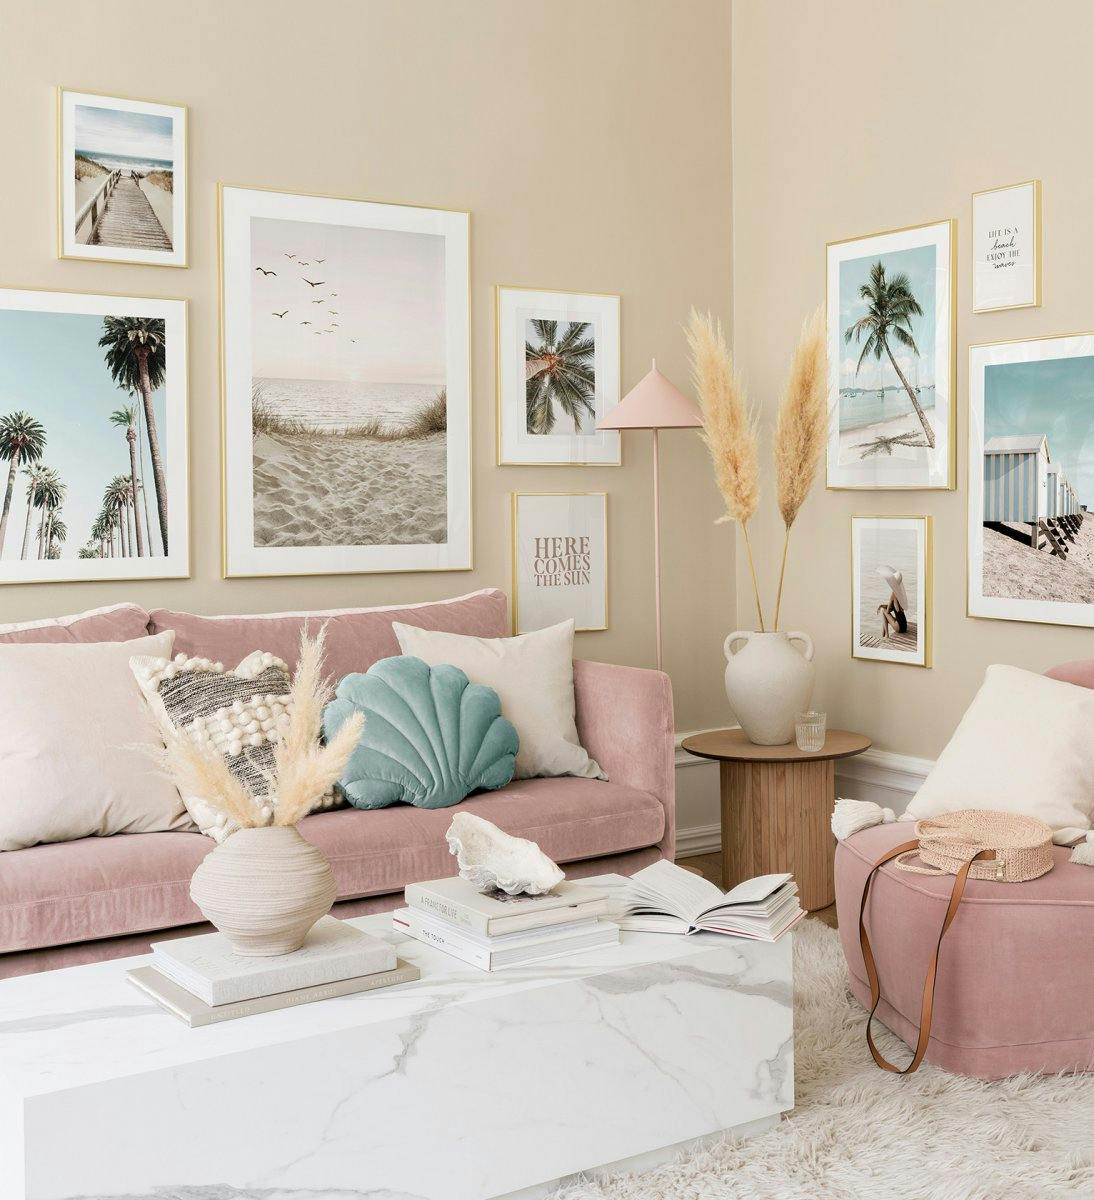 Trendi galériafal színes, arany keretes poszterekkel a stílusos nappaliért.